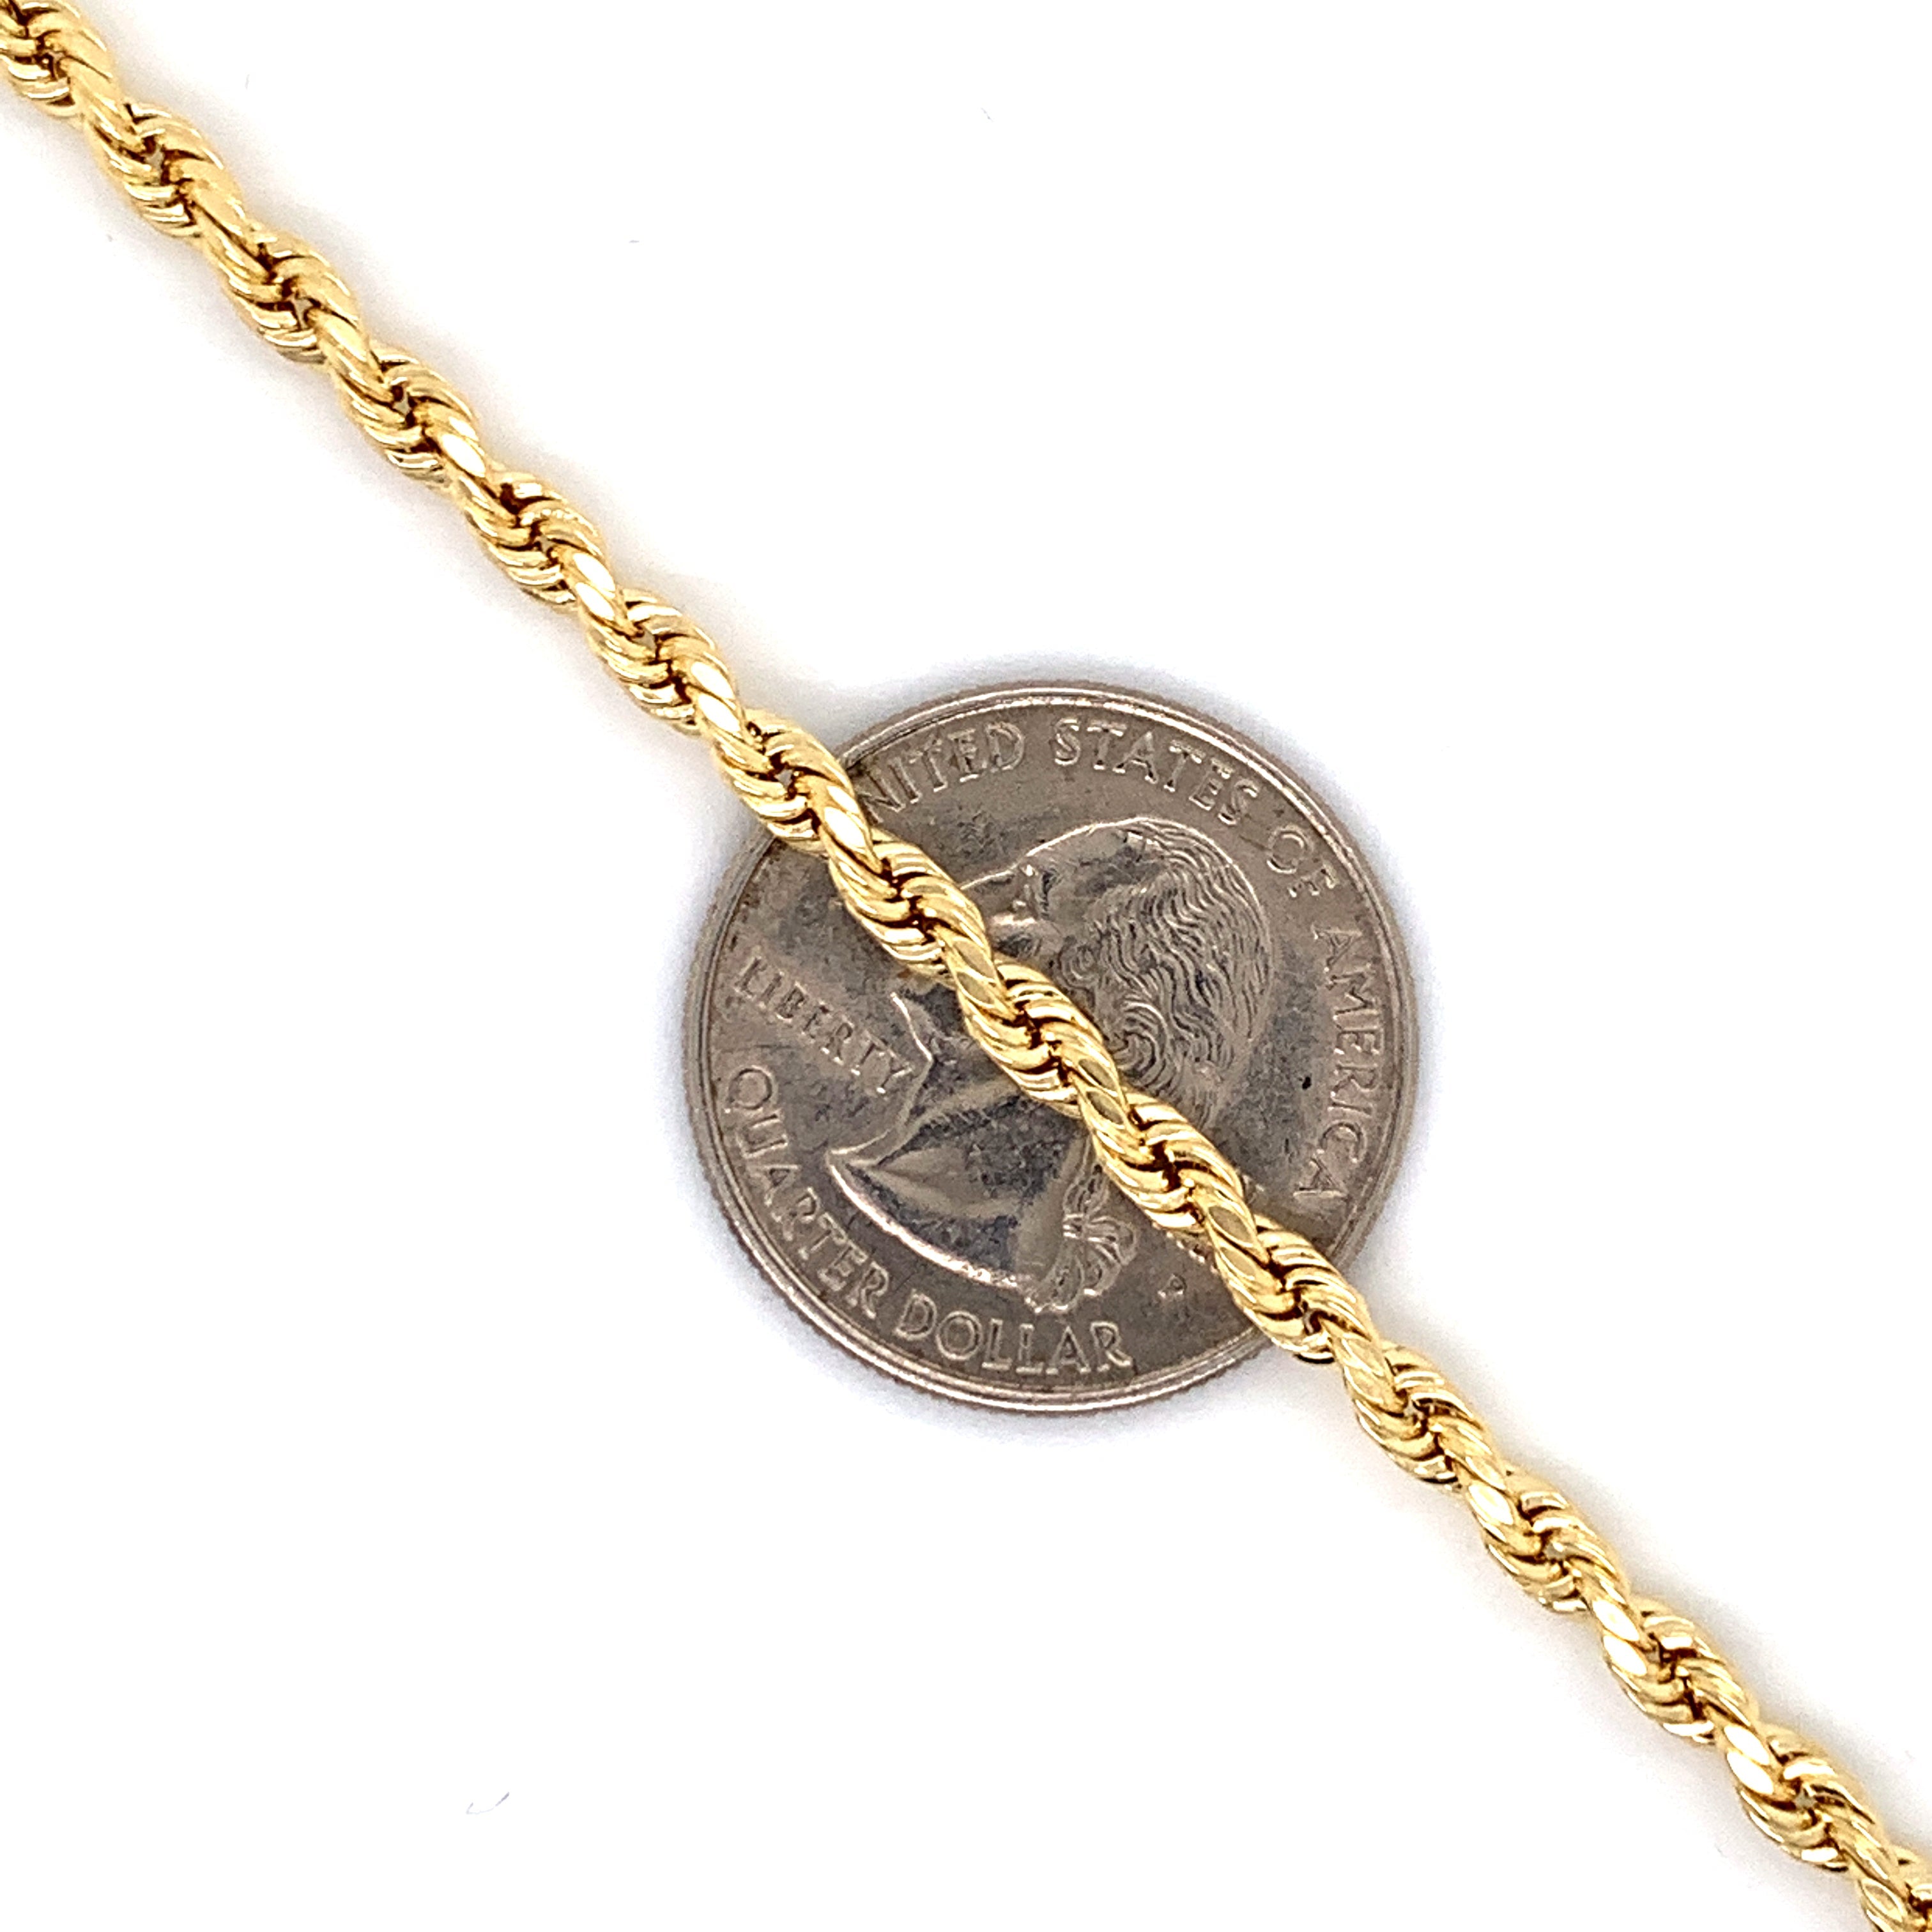 10K Gold Rope Chain (Regular)- 4mm - White Carat Diamonds 